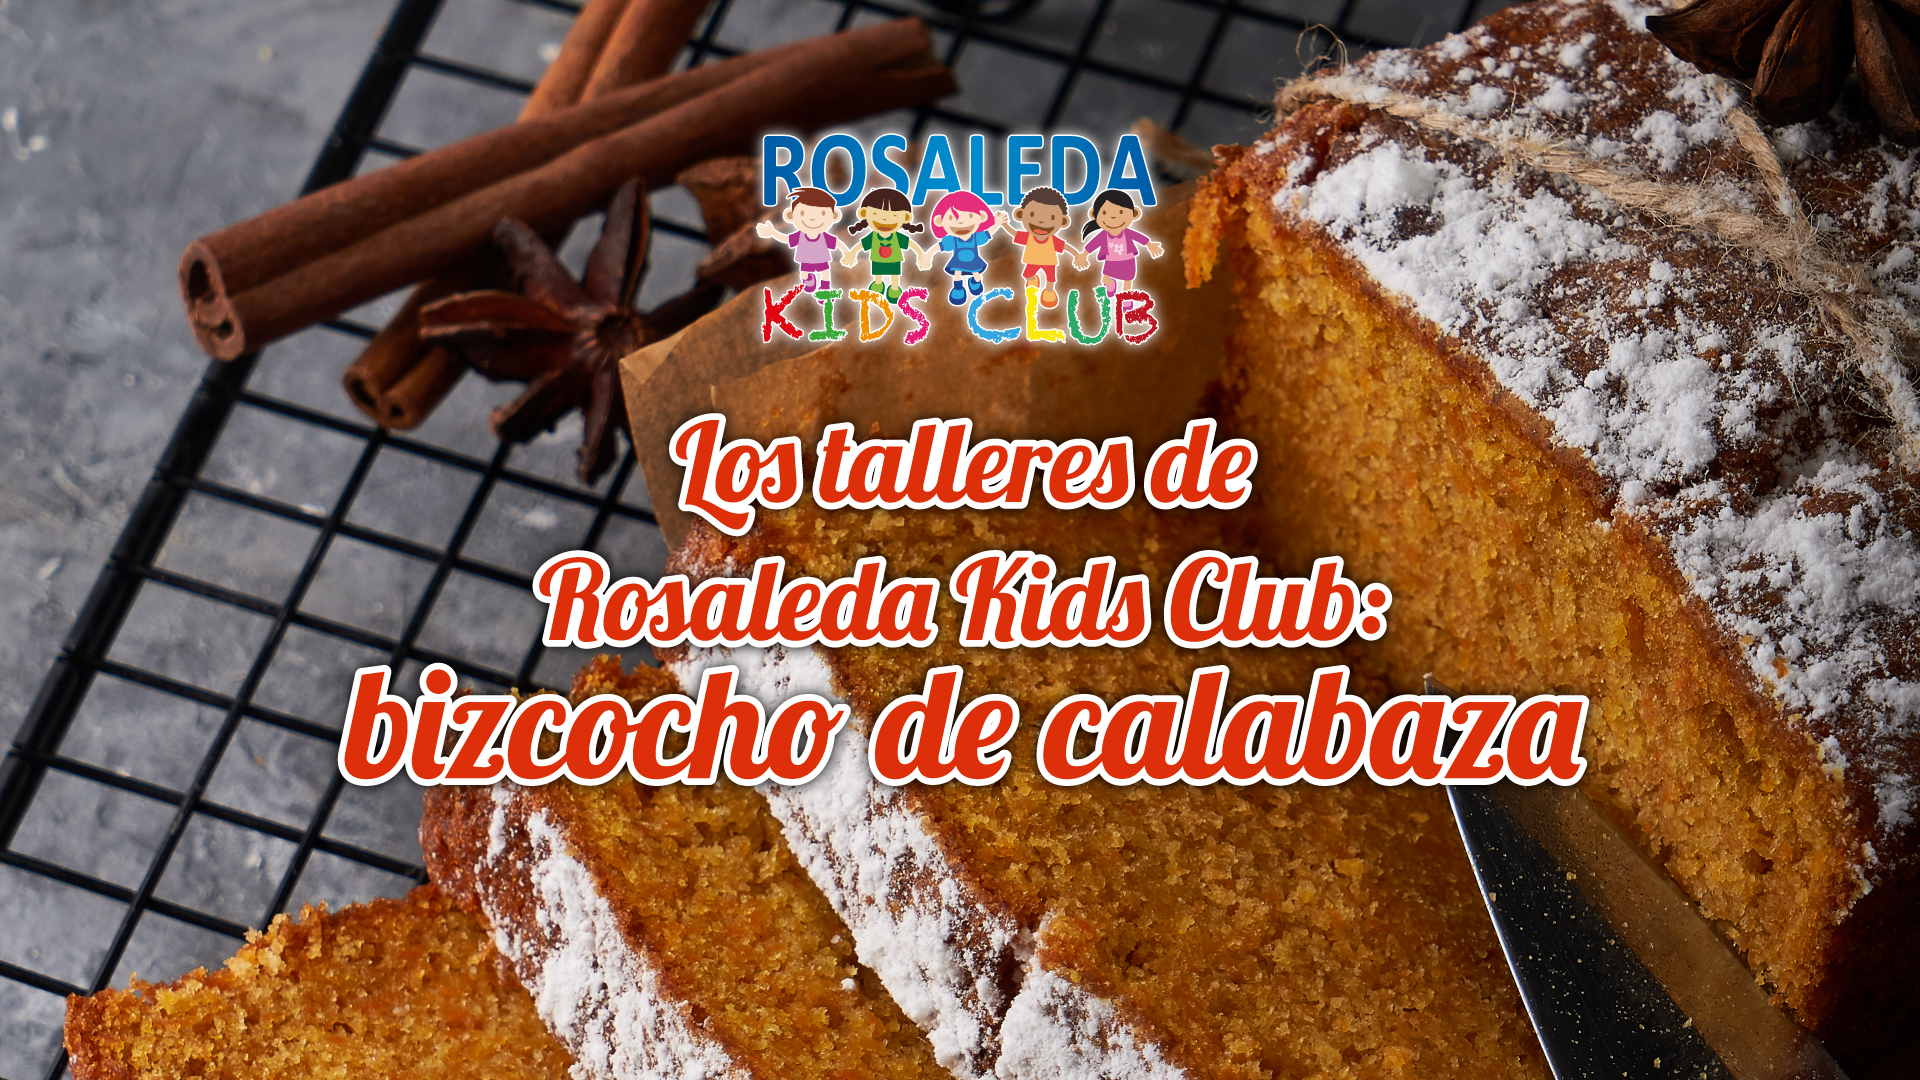 Rosaleda Kids Club: bizcocho de calabaza